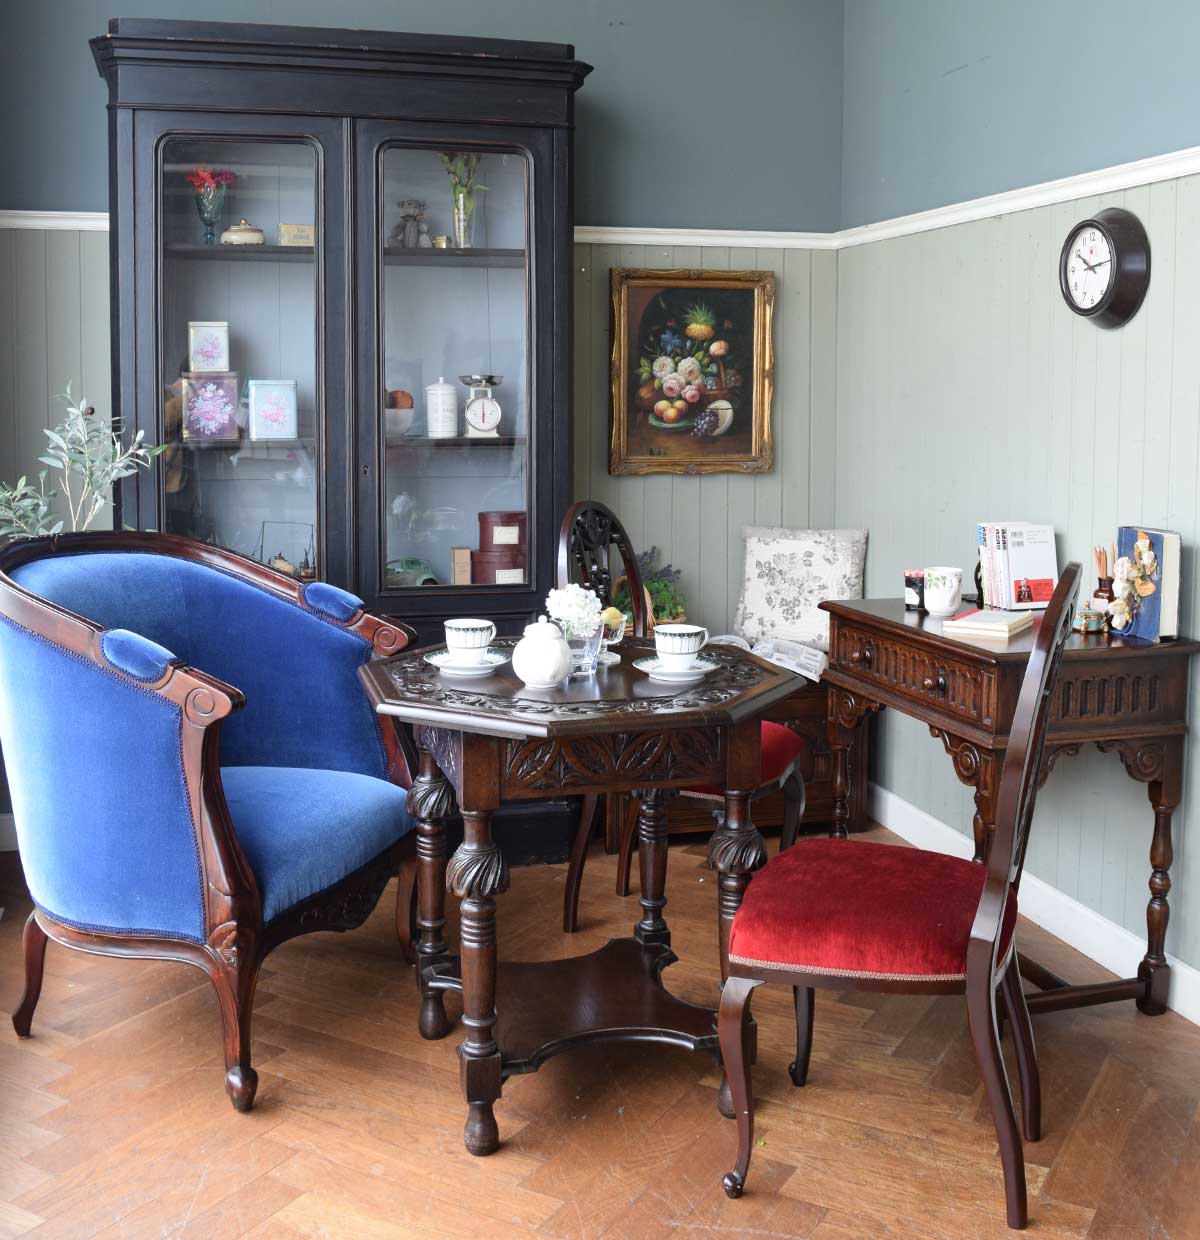 ハンドルスタイルのリビング | 海外のインテリア雑誌が見本フランスの家具が挿し色のお部屋